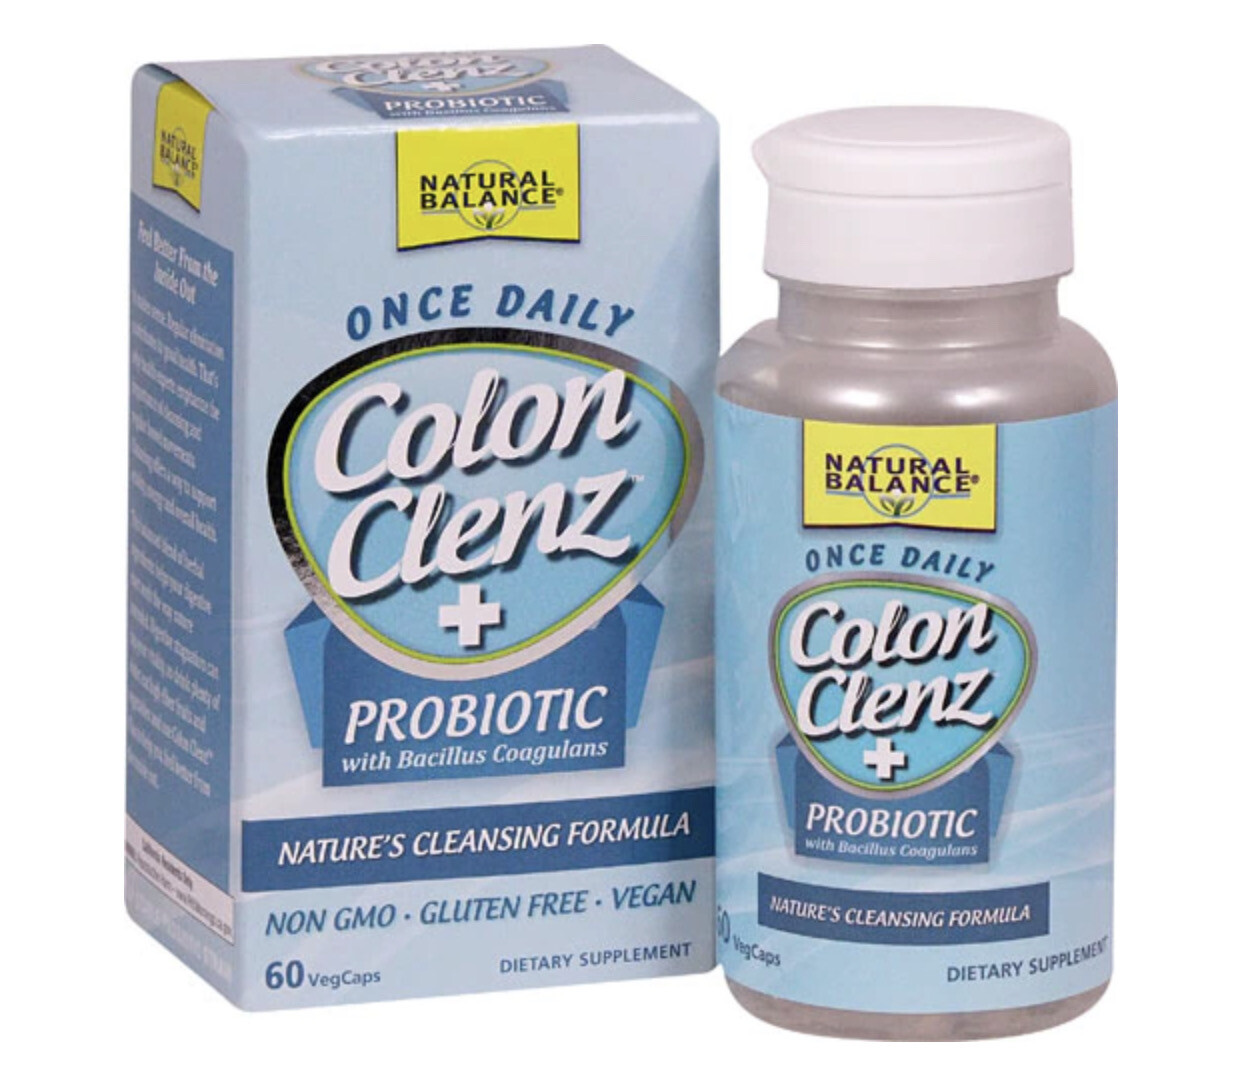 Natural Balance Colon Clenz + Probiotic